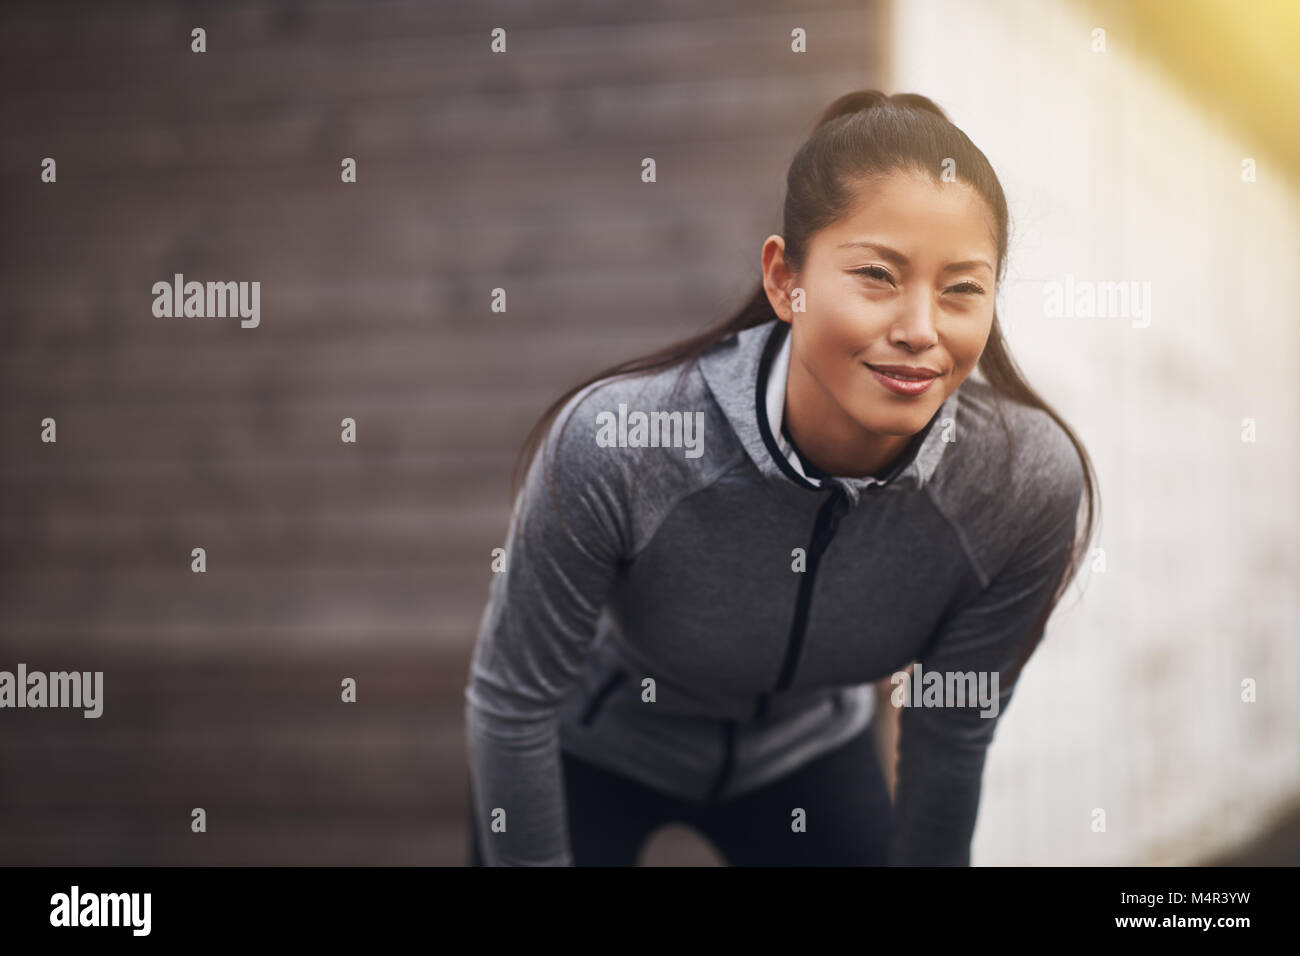 Lächelnde junge asiatische Frau stehend außerhalb übung Kleidung tragen, mit den Händen auf den Knien die Vorbereitung für einen Lauf zu gehen Stockfoto